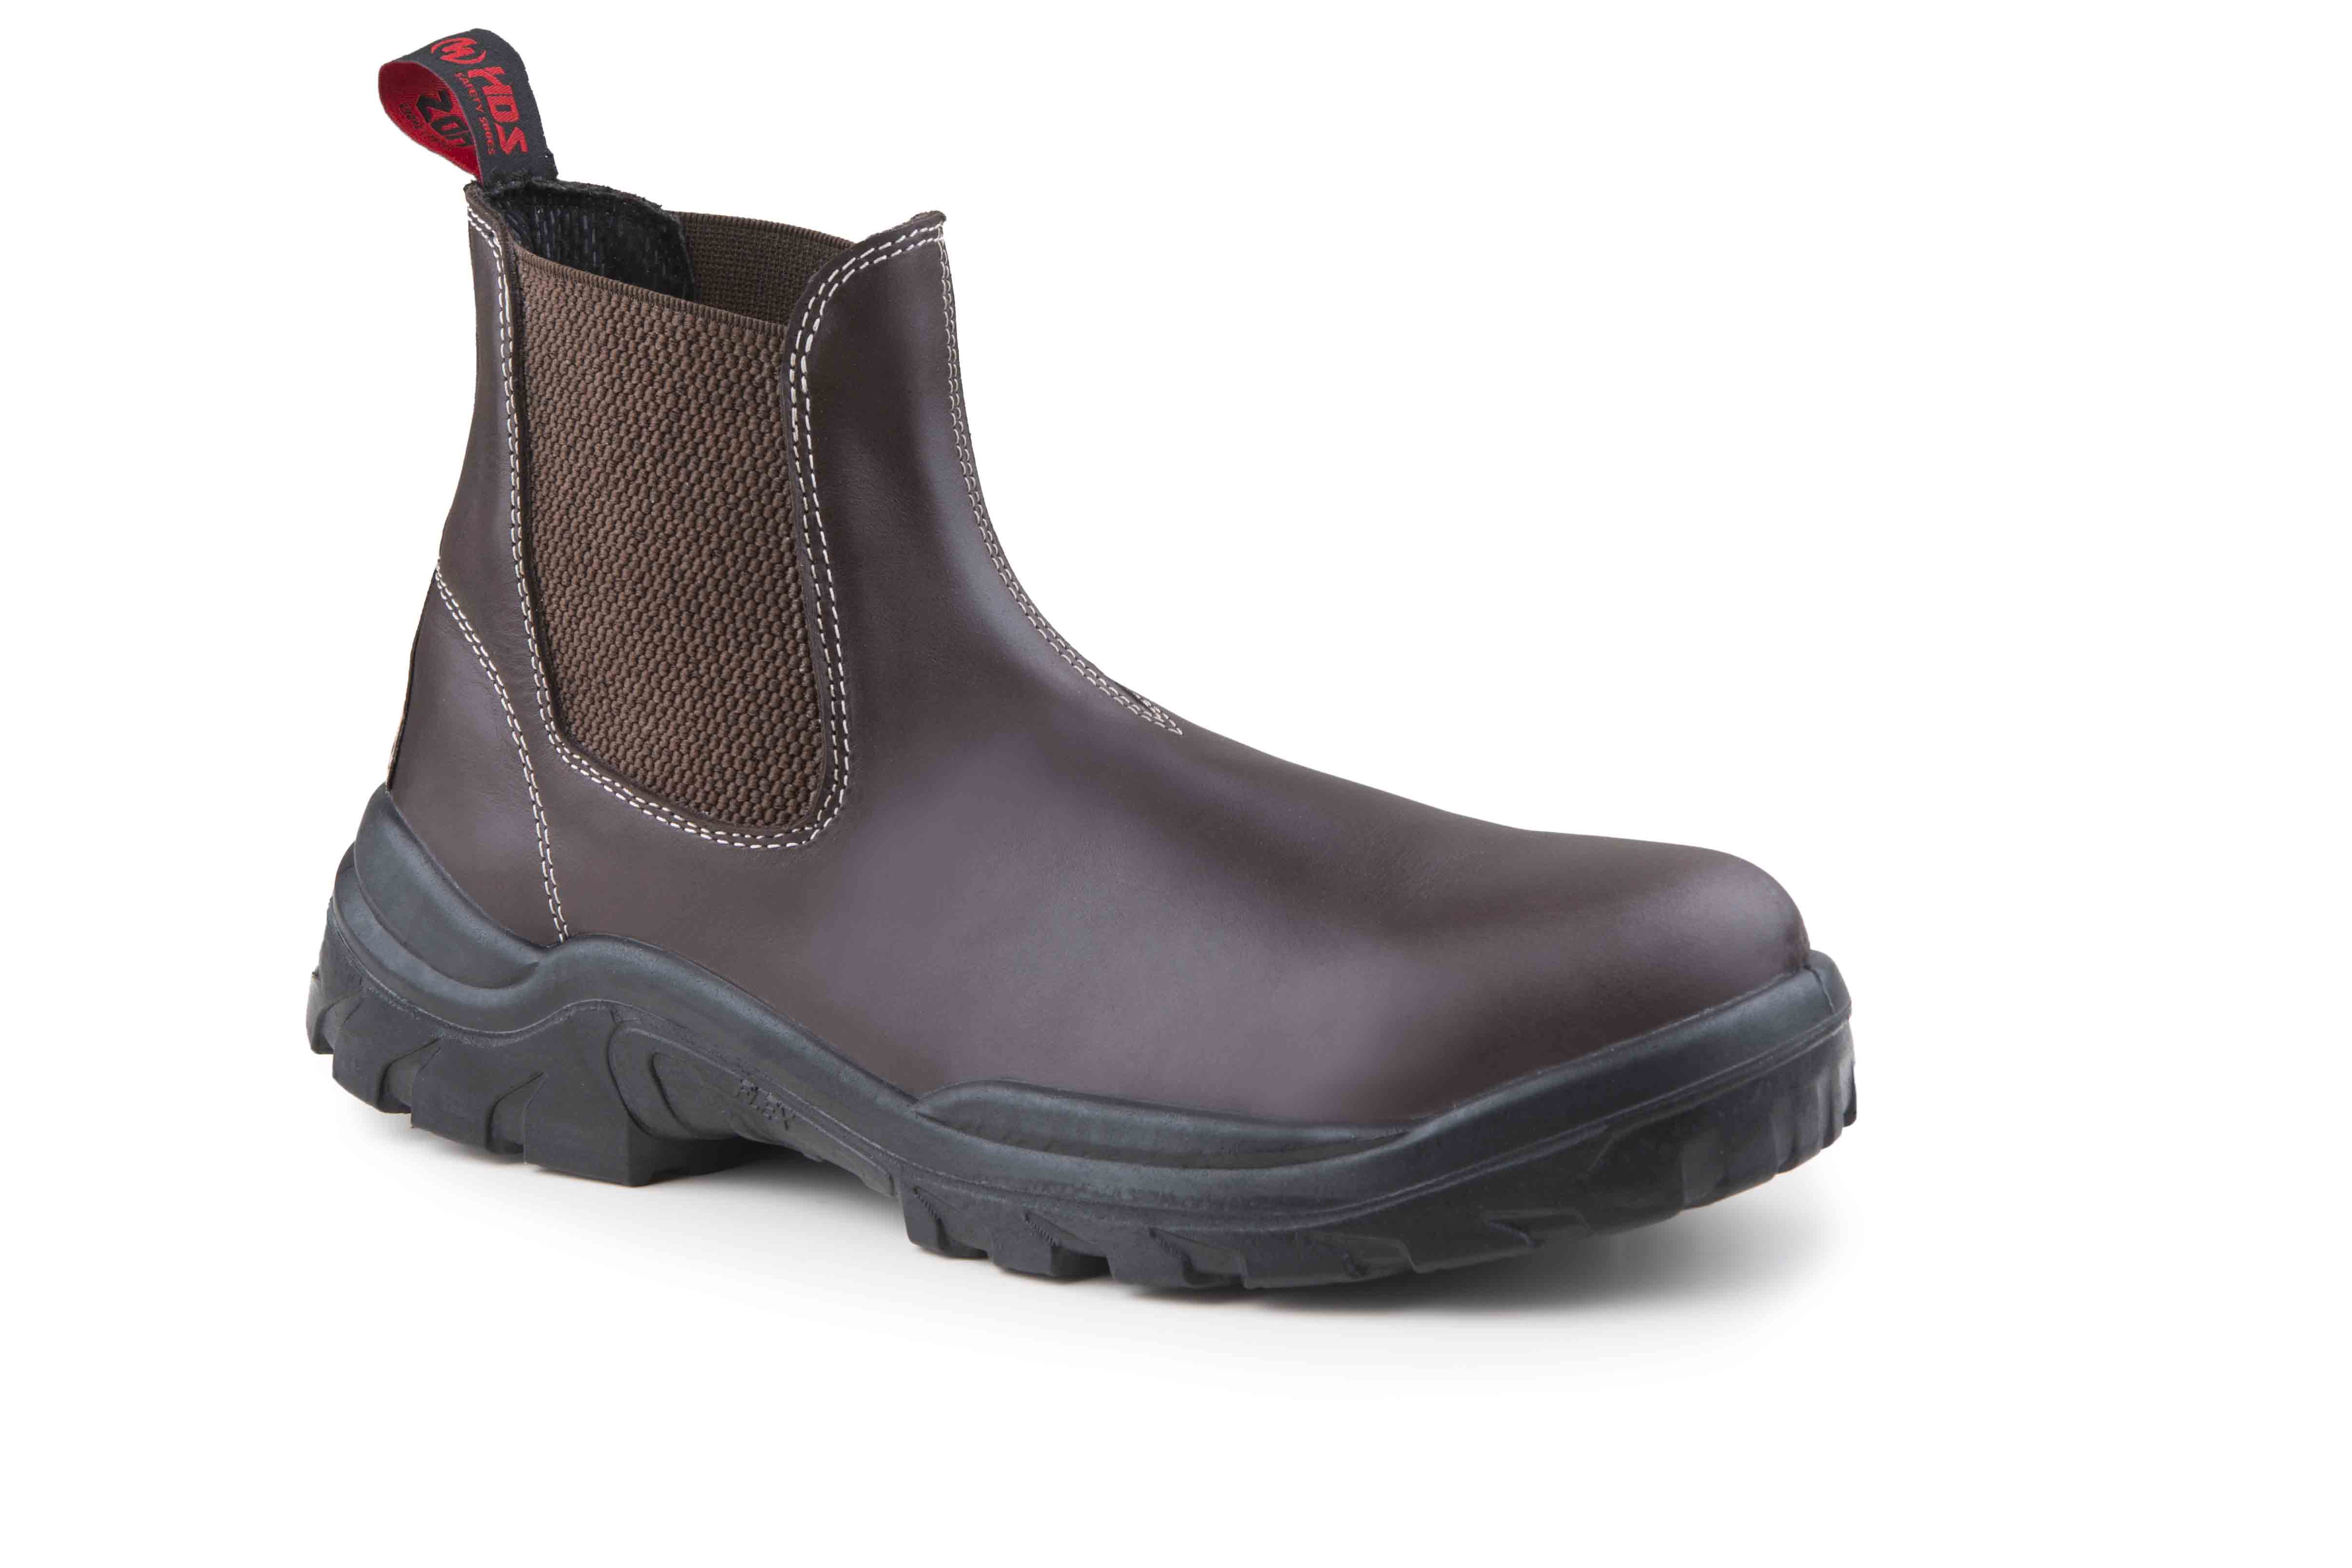 HDS İş Güvenlik Ayakkabıları, Fx Aust Modelleri